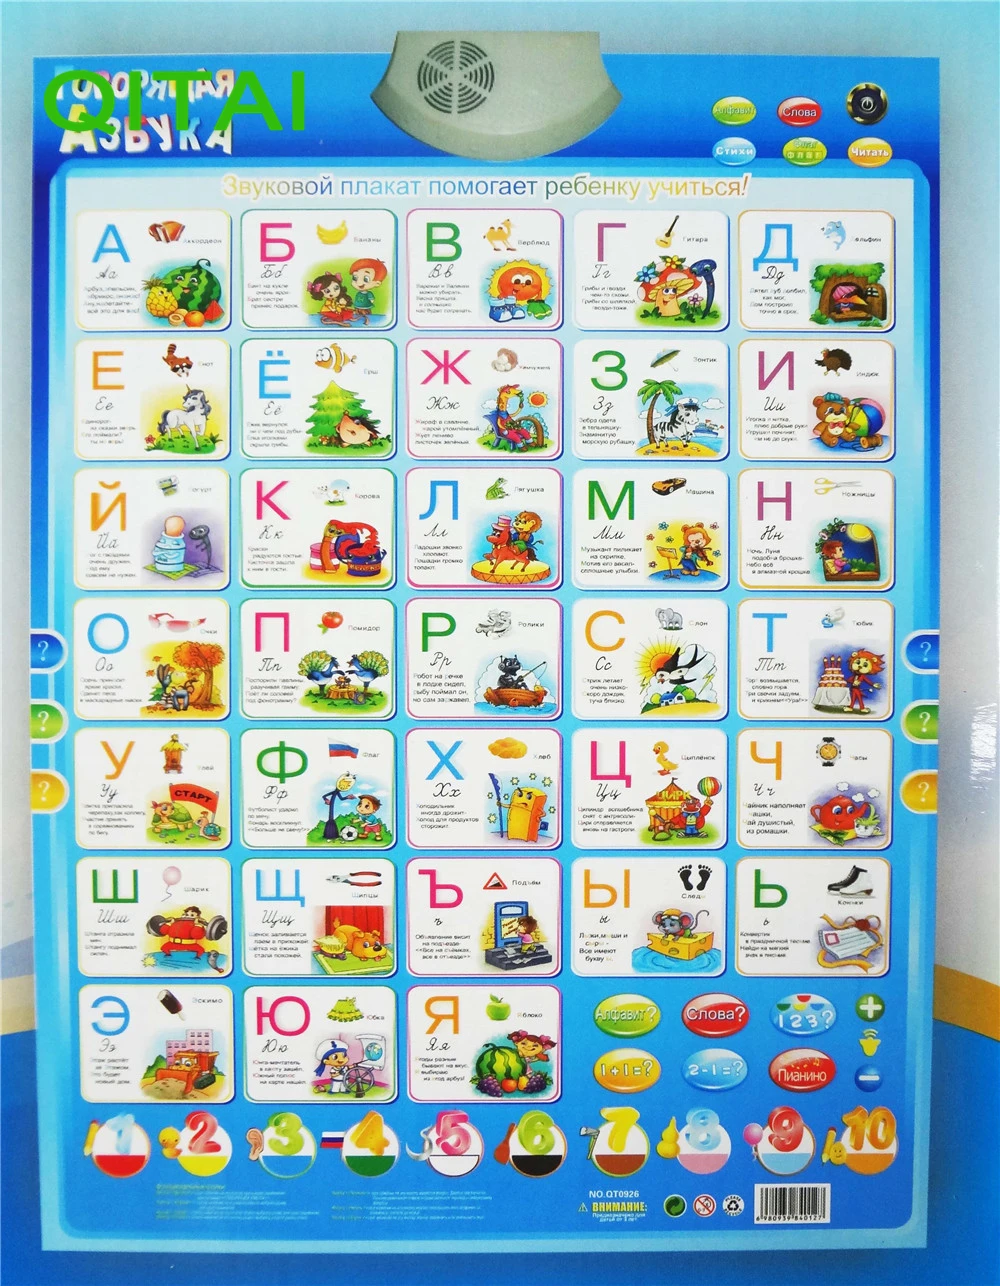 Многофункциональный русский плакат с алфавитом и доской для рисования покраска мольберт доска искусство игрушки для детей электронная музыкальная игрушка